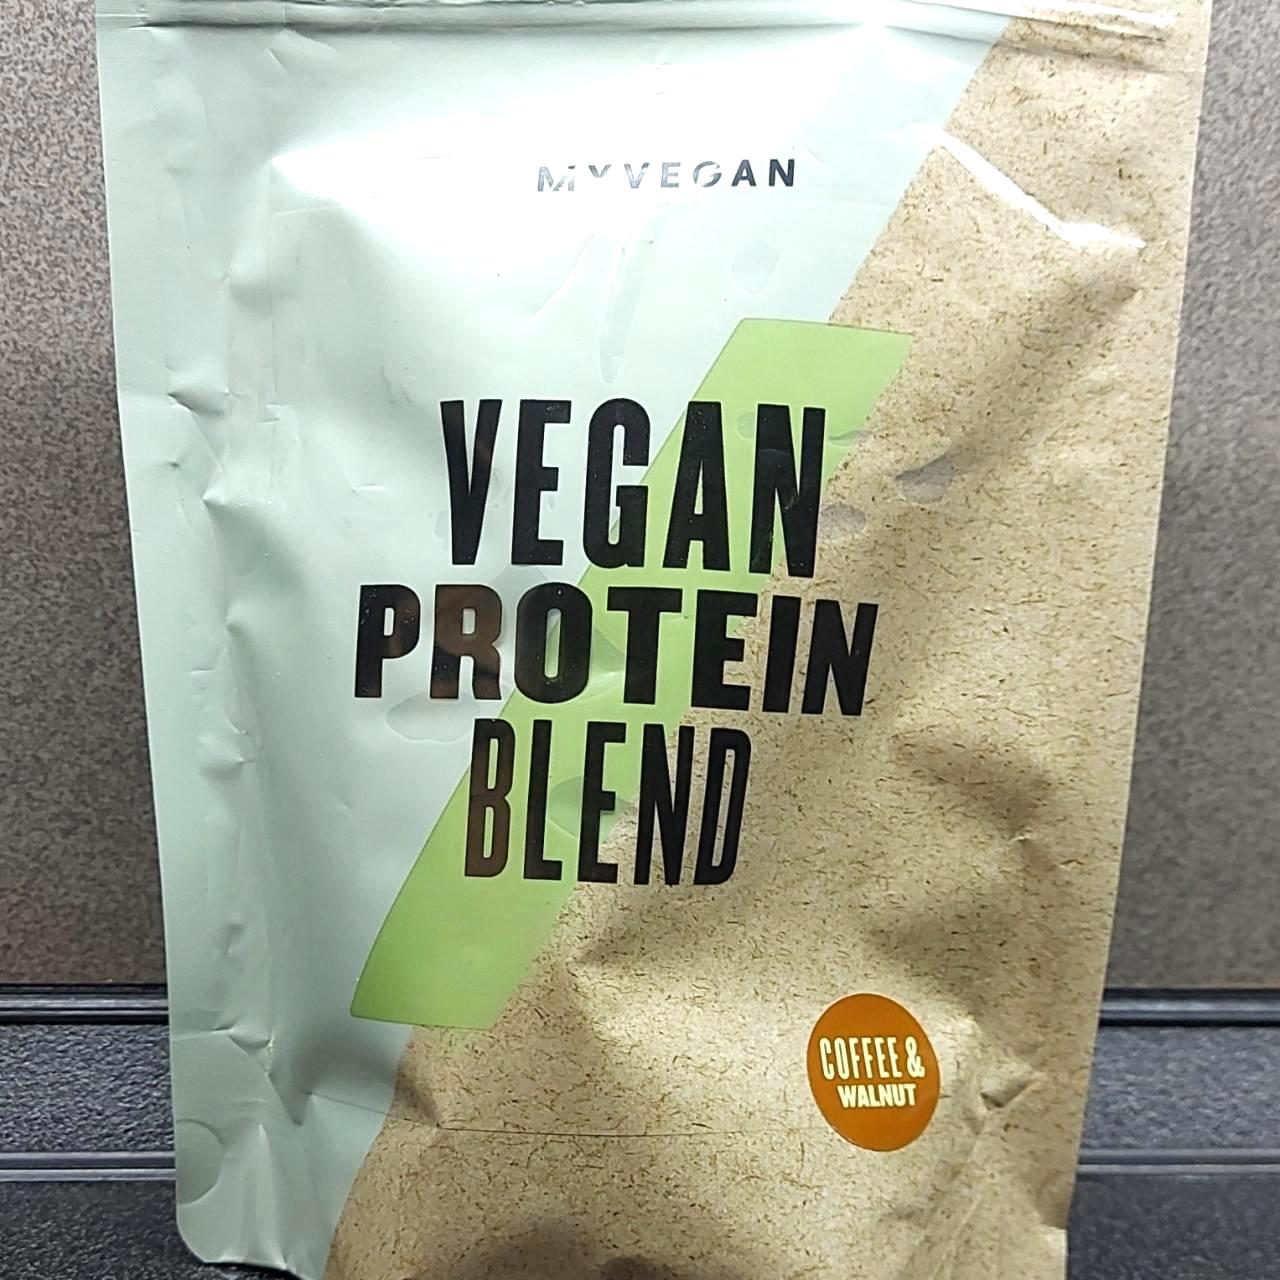 Képek - Vegan protein blend Coffee & walnut MyProtein